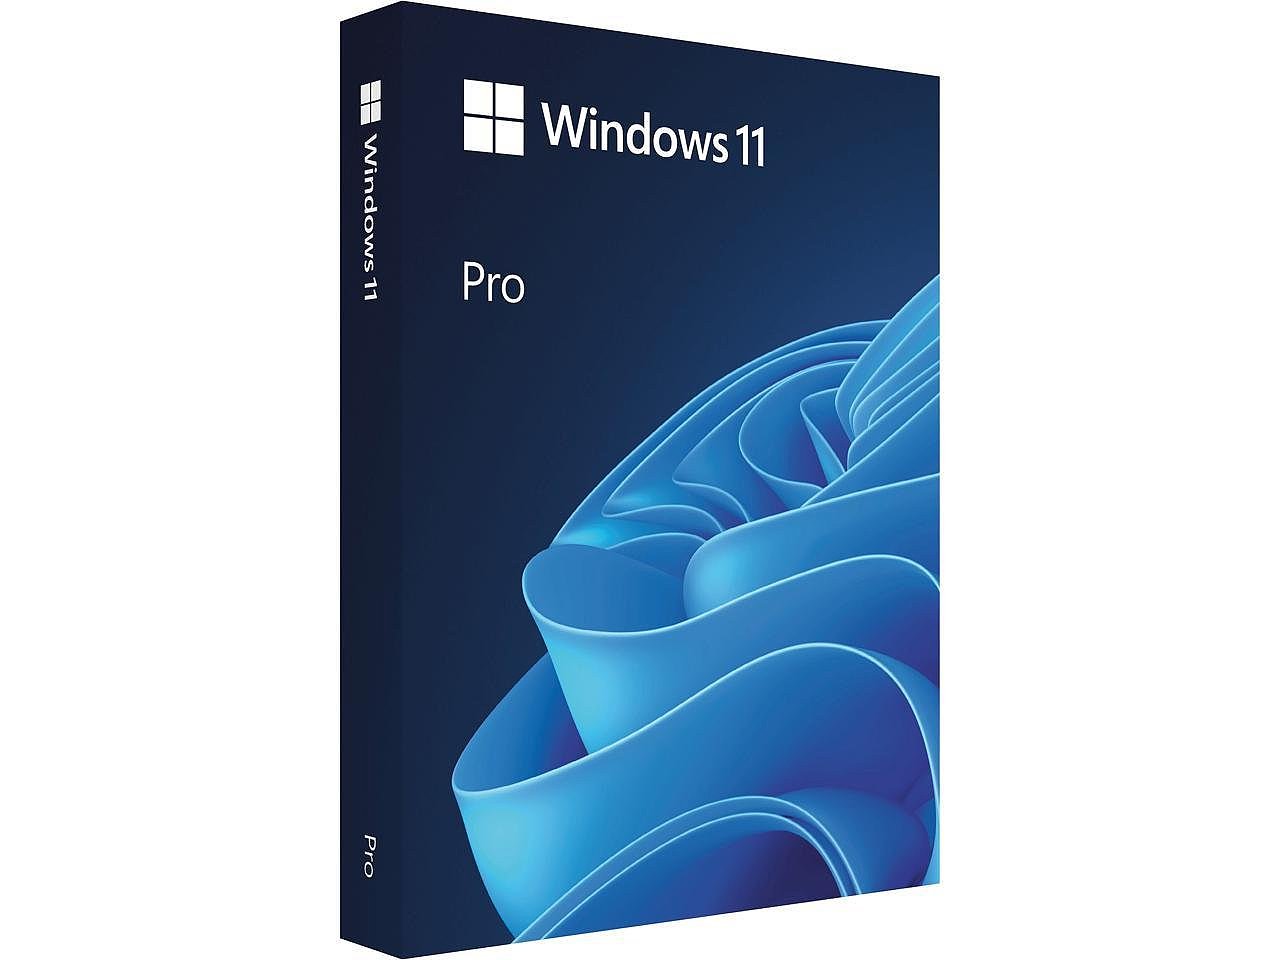 微软 Windows 11 彩包零售版已经上架实体店销售 - 2